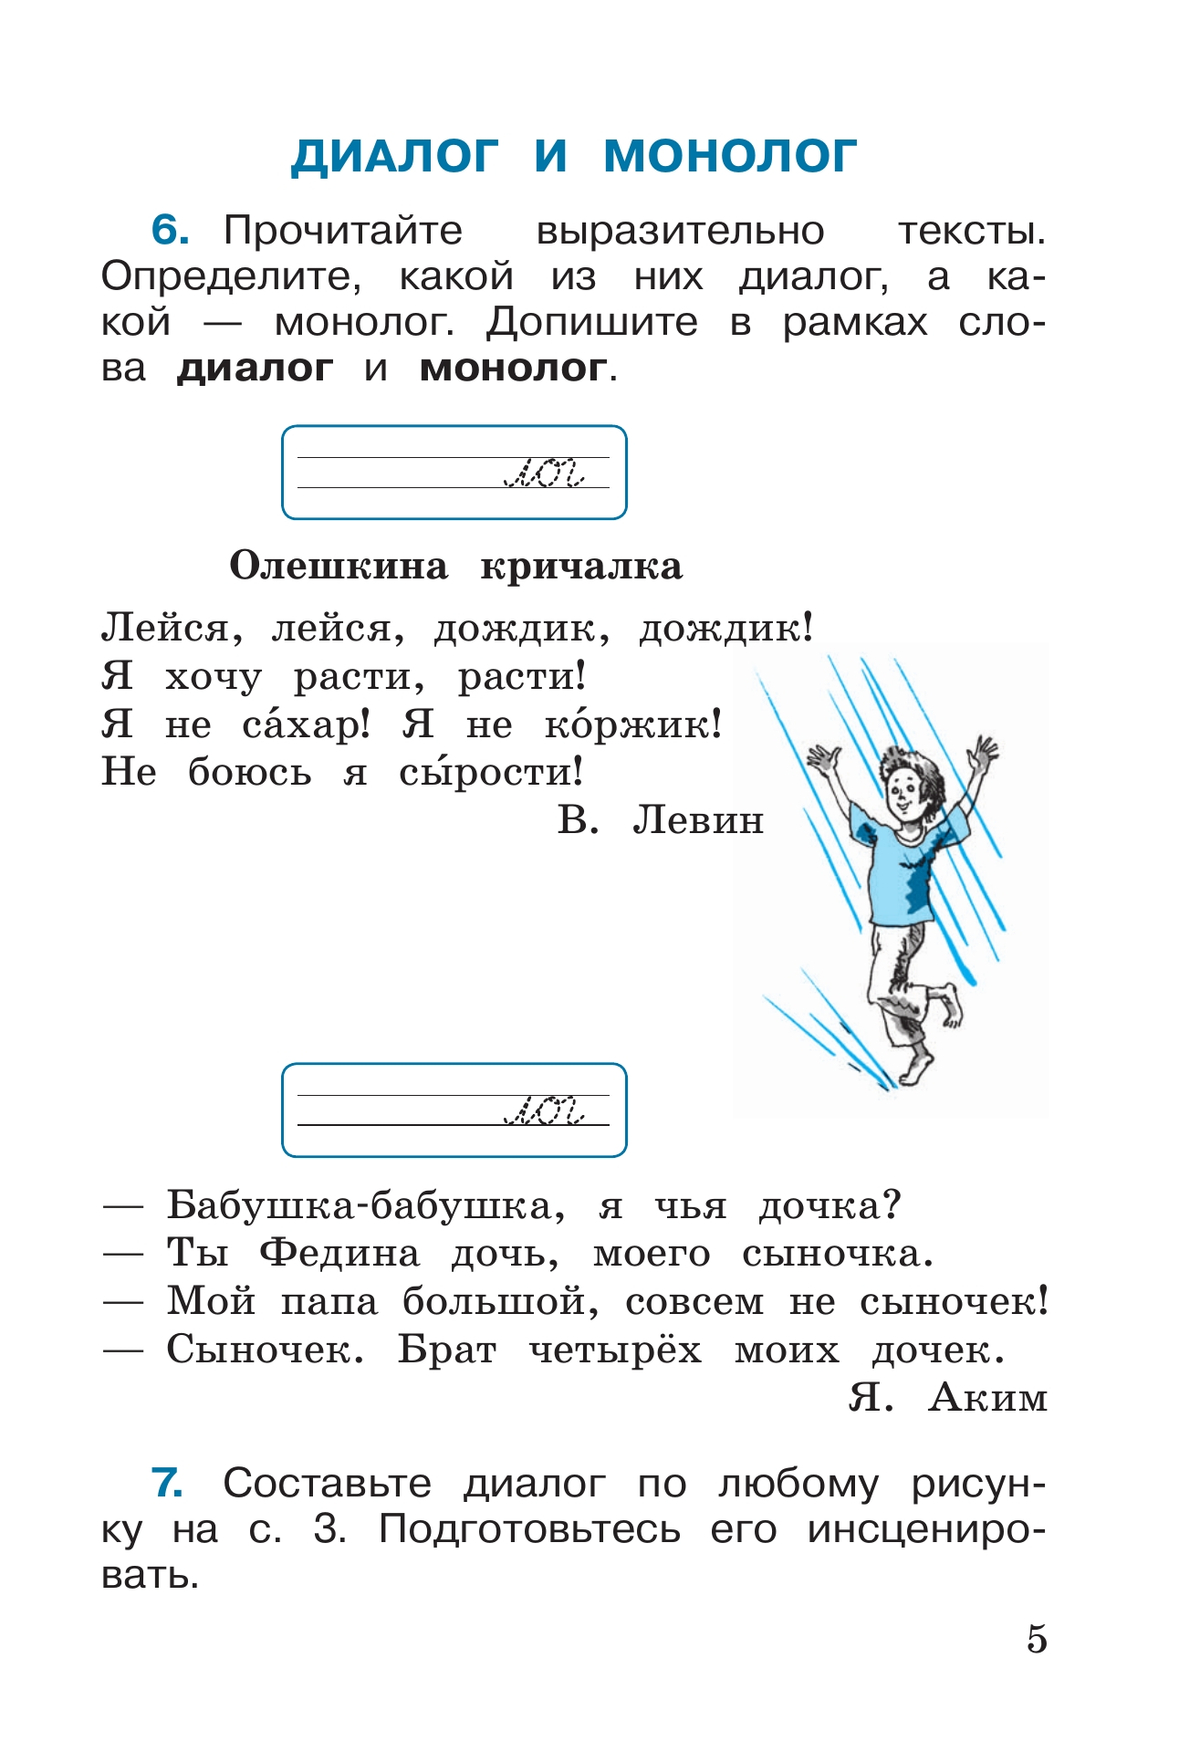 Русский язык. Рабочая тетрадь. 2 класс. В 2-х ч. Ч. 1 6